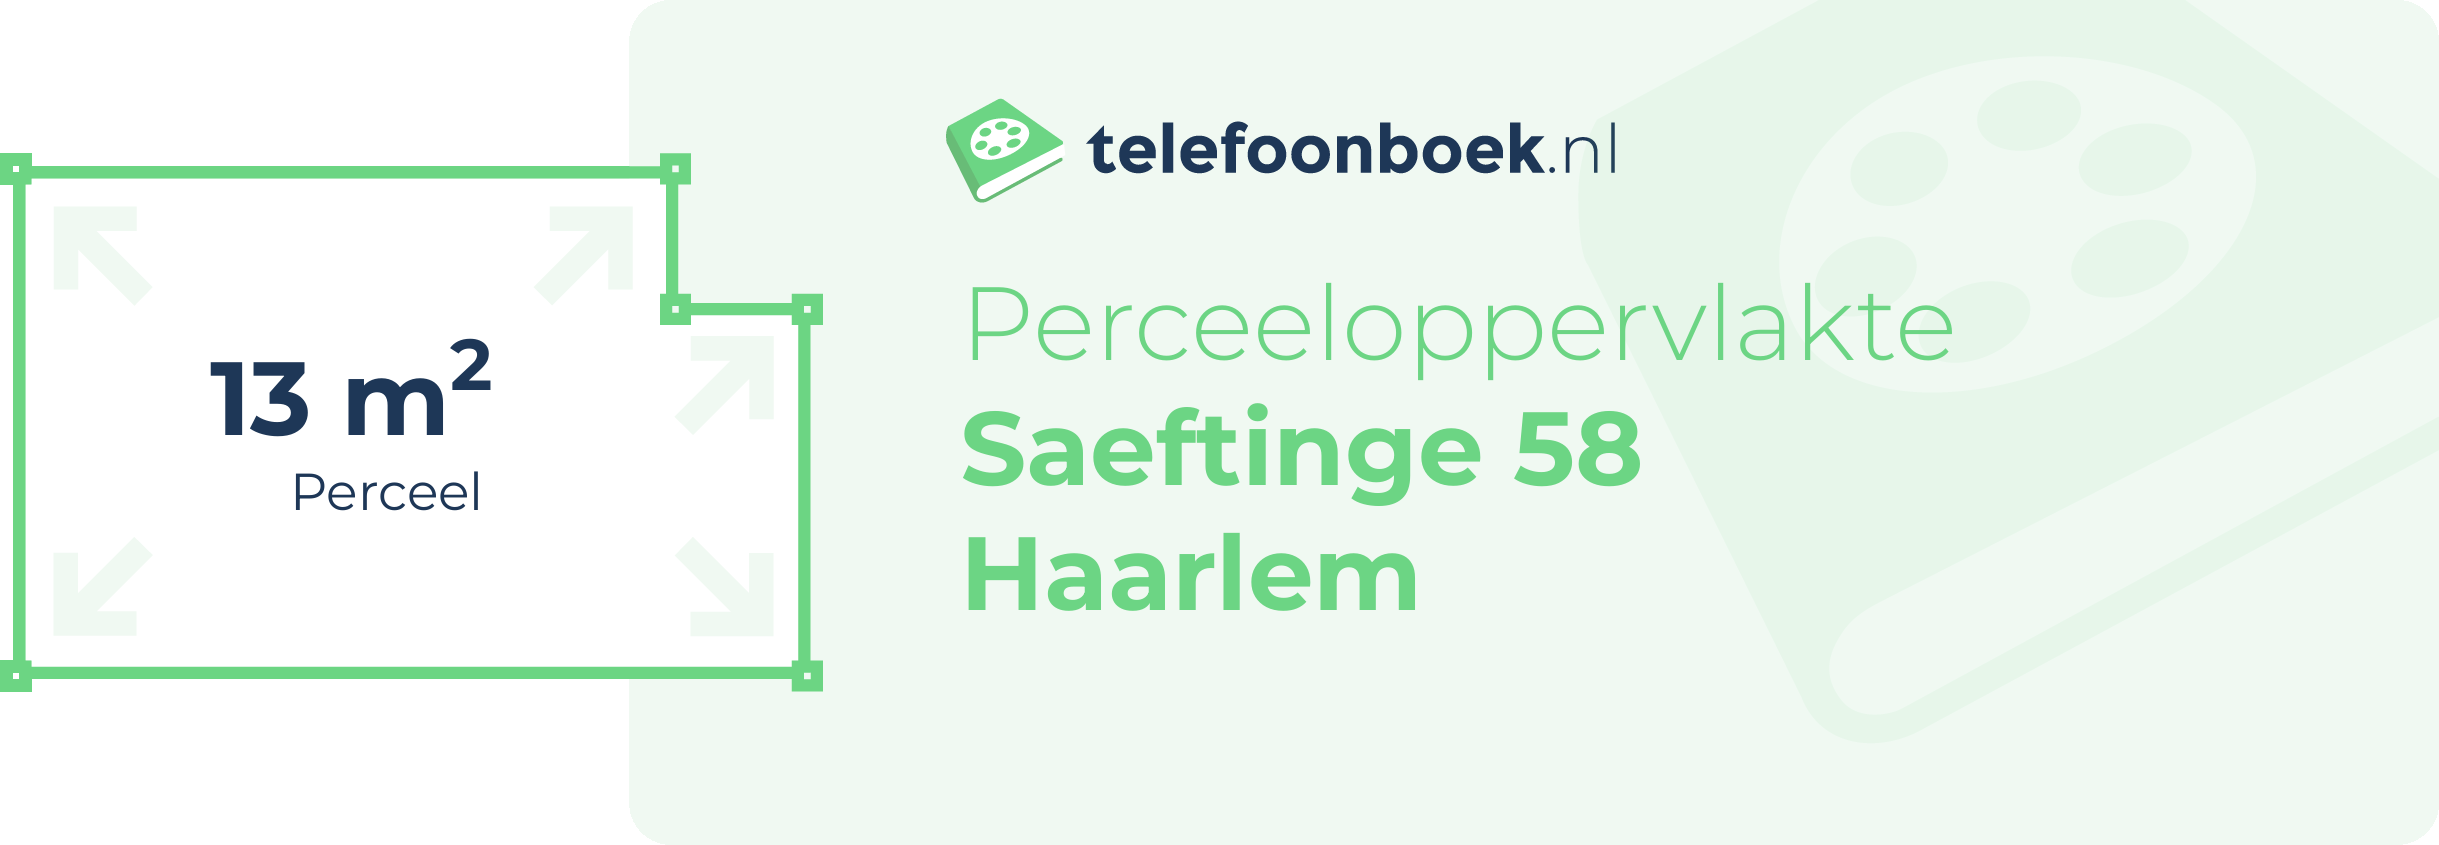 Perceeloppervlakte Saeftinge 58 Haarlem